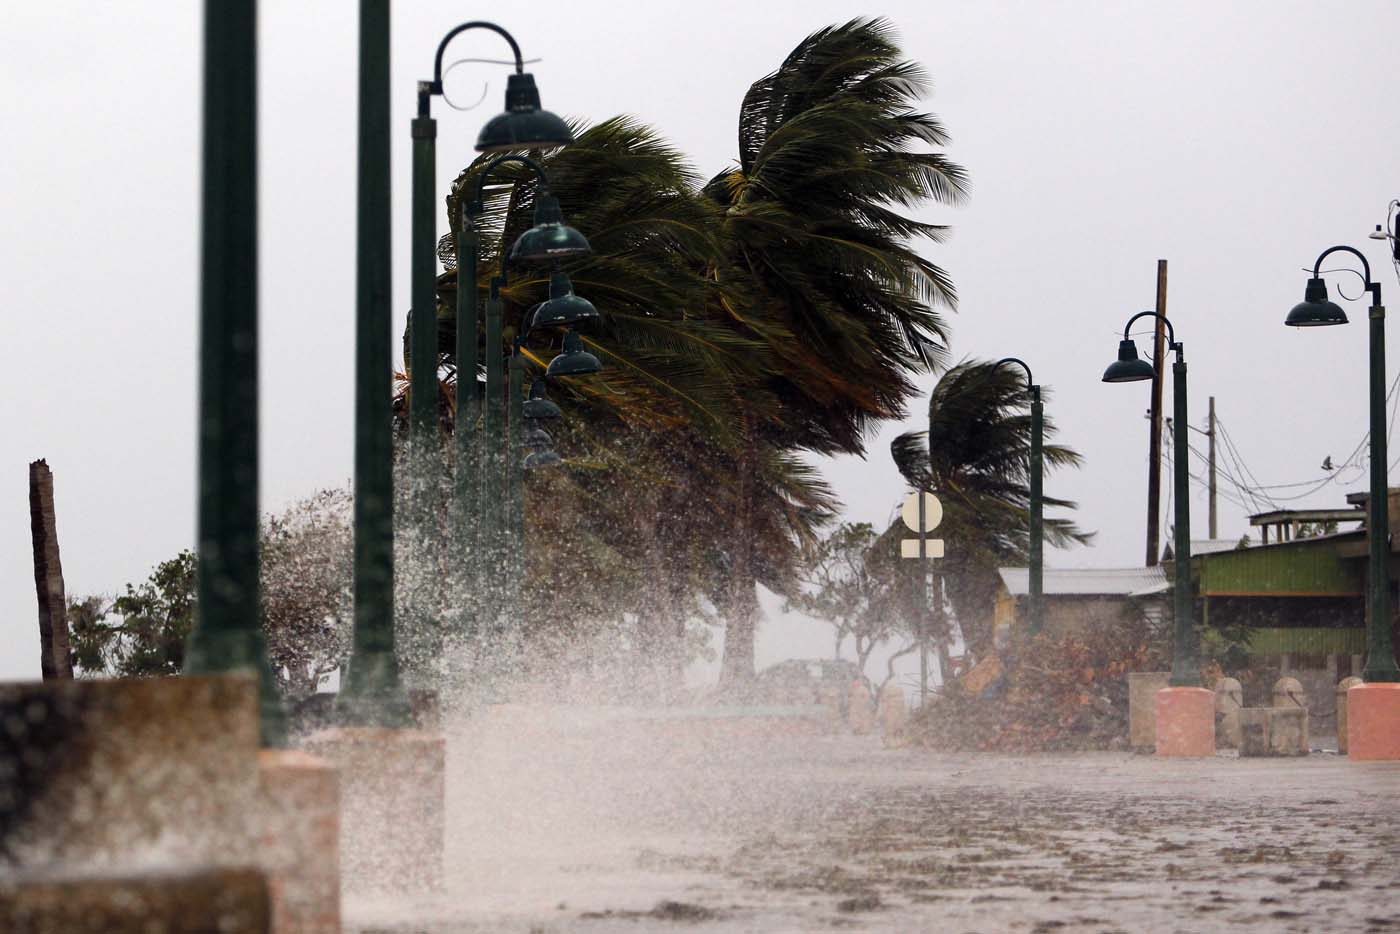 Servicio Meteorológico de Puerto Rico se quedó sin radar al llegar huracán María